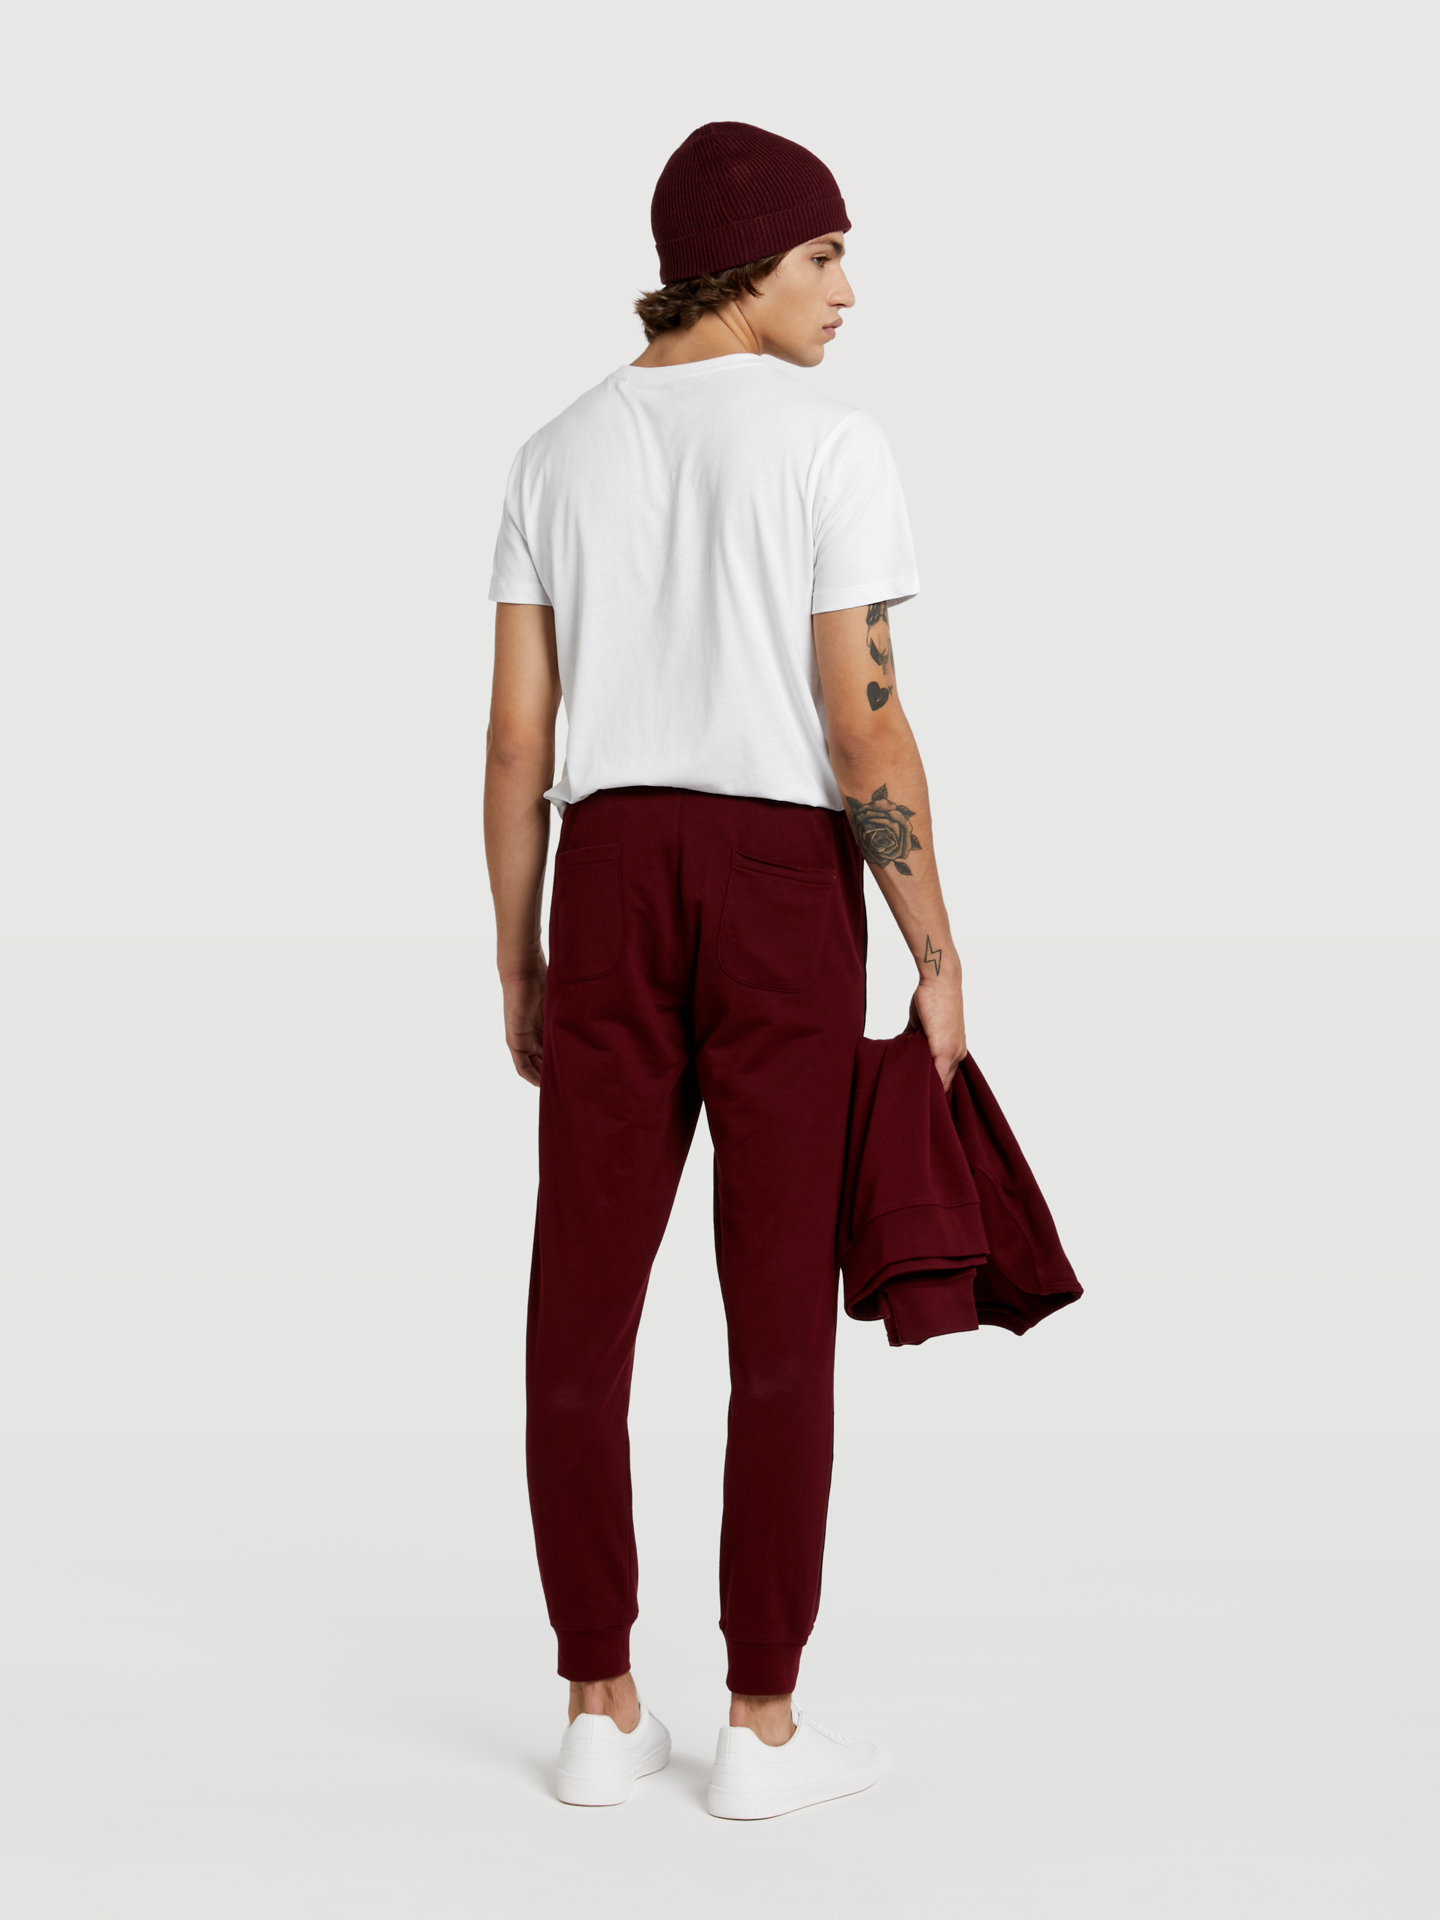 Sportswear Trousers Bordeaux Casual Man